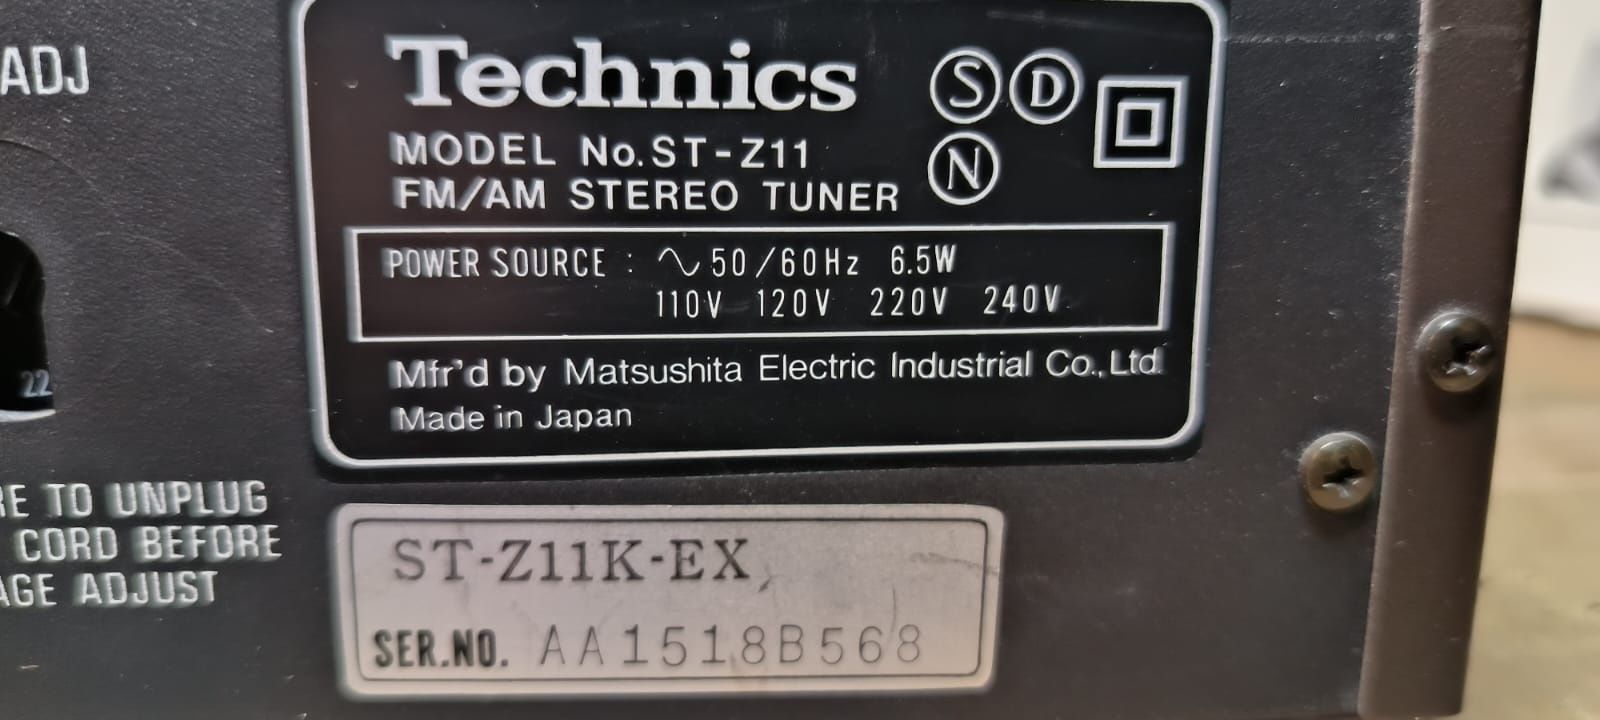 Technics ST-Z11 FM / AM TUNER STEREO sprawny
Made in Japan

SPRZĘT 100